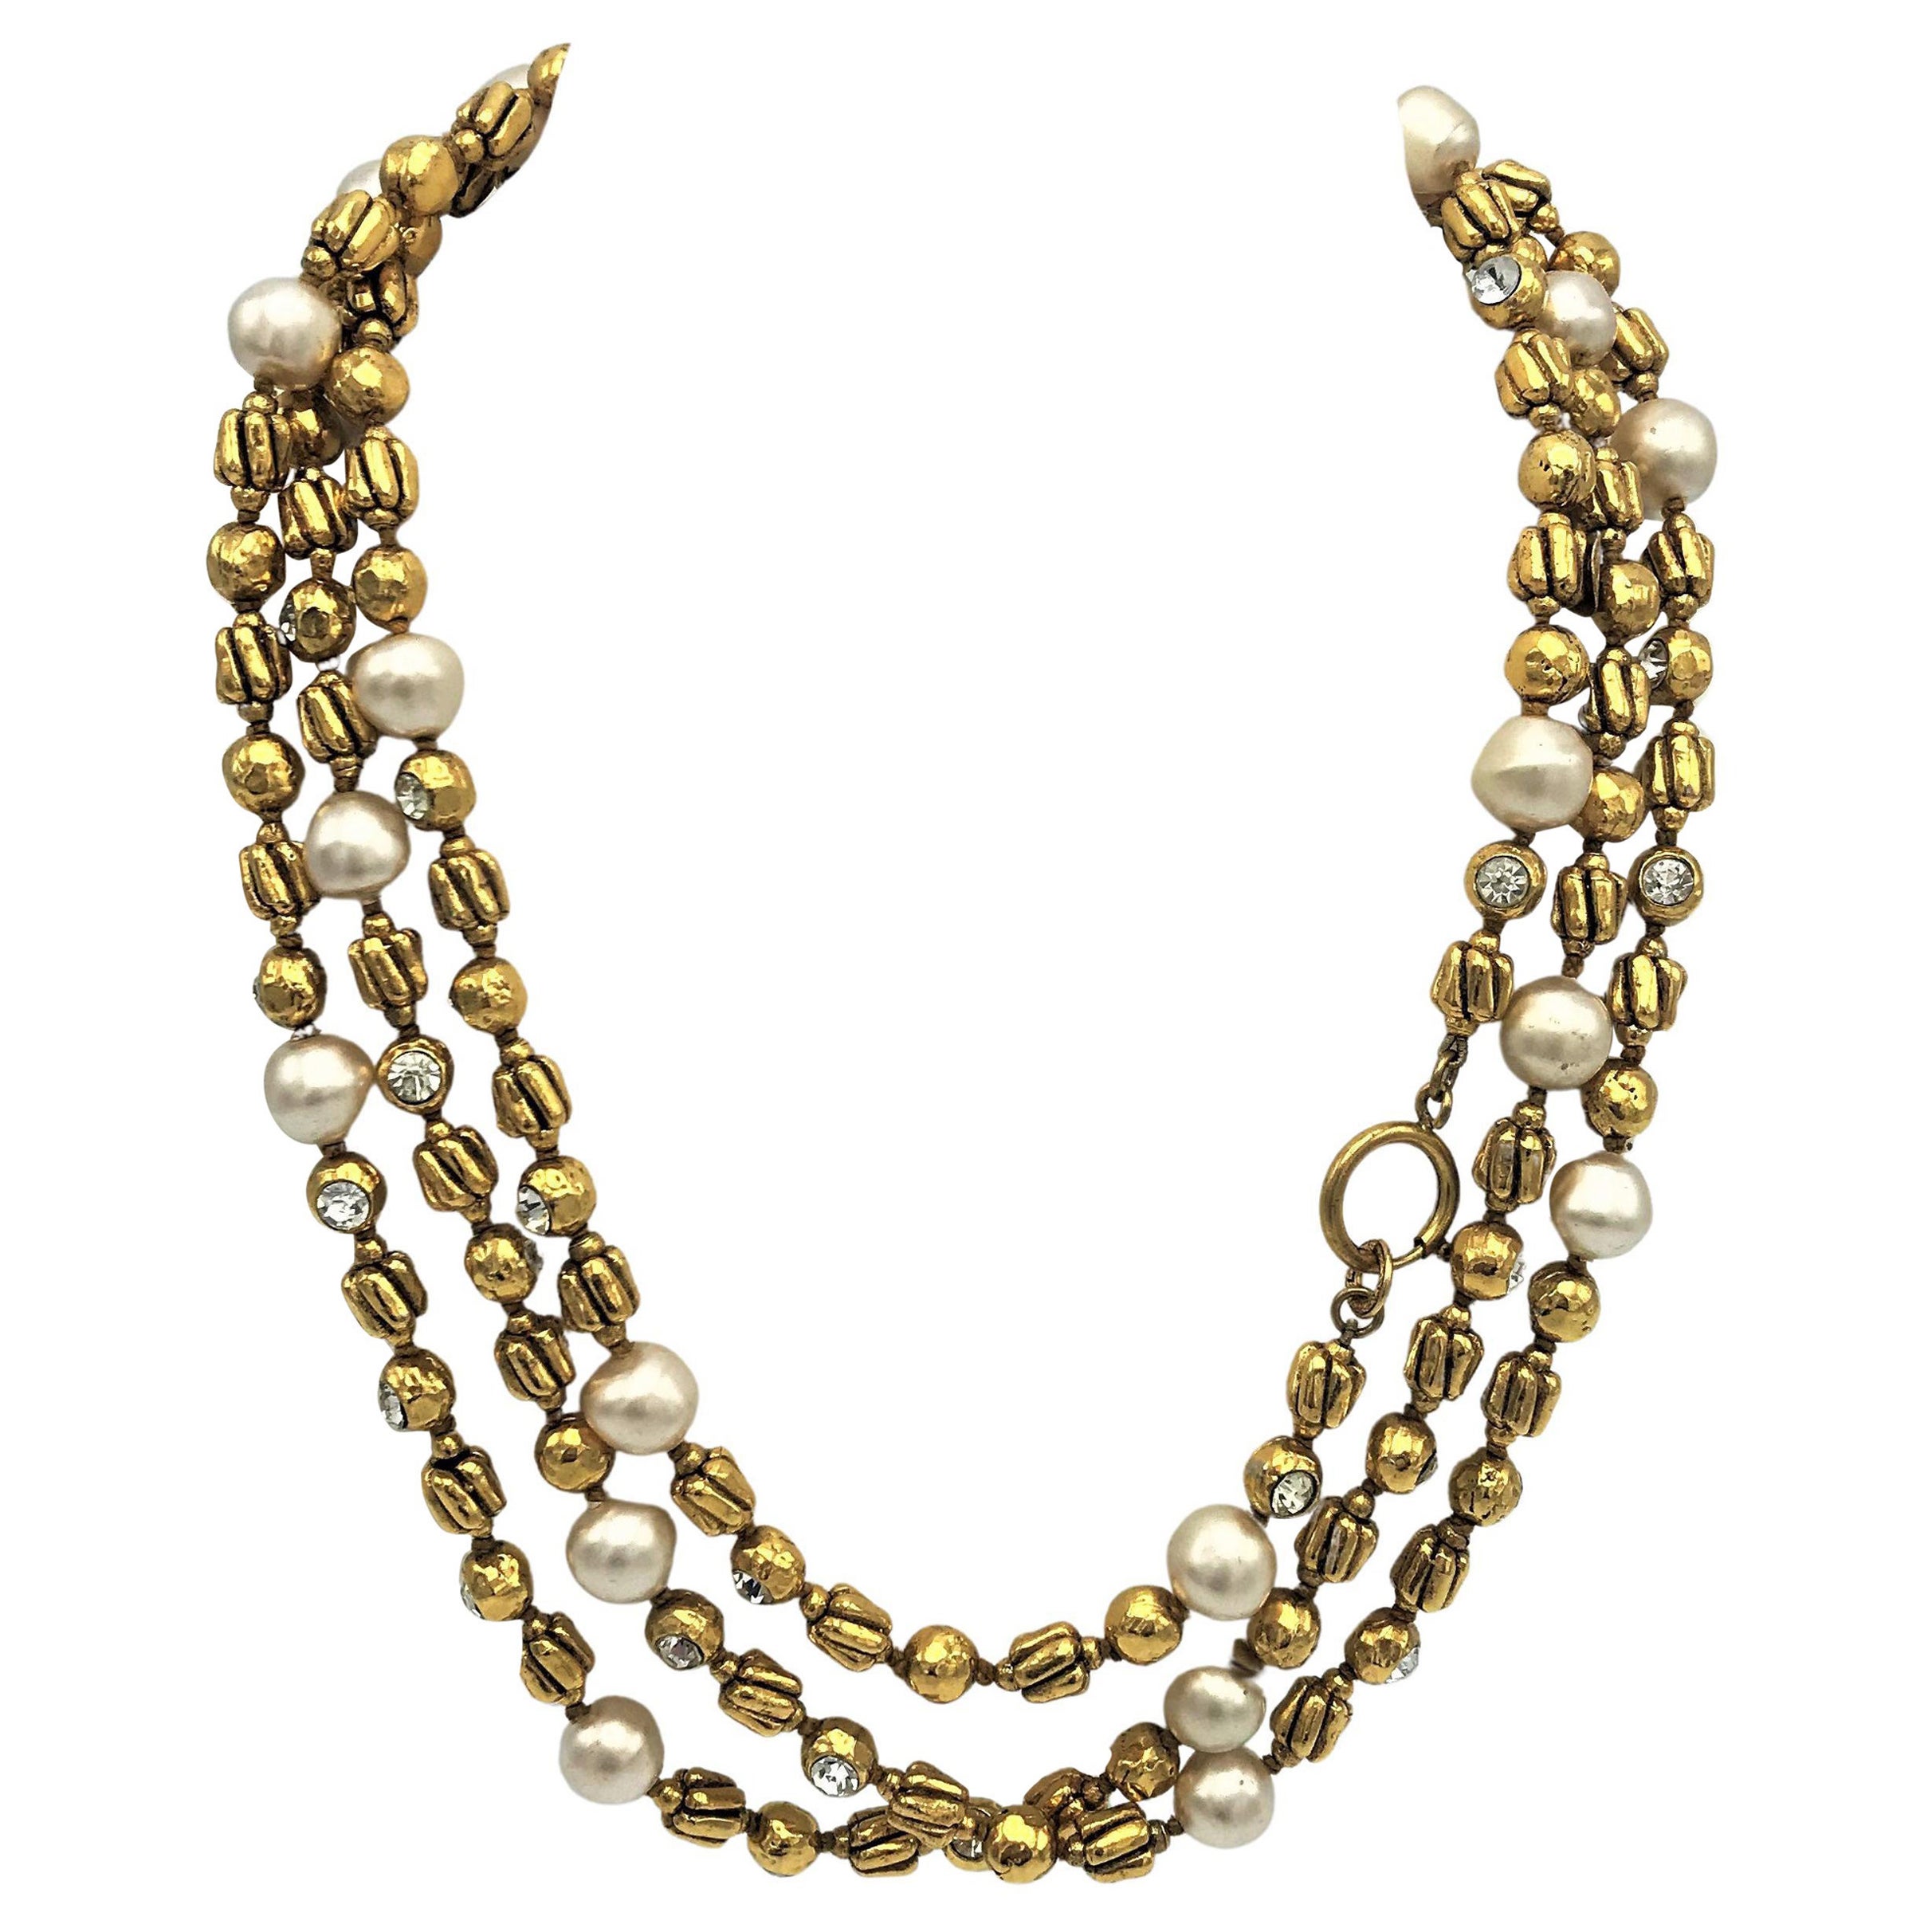 Chanel-Halskette von R. Goossens mit Perlen, 183 cm lang vergoldet, 1970/80er Jahre 